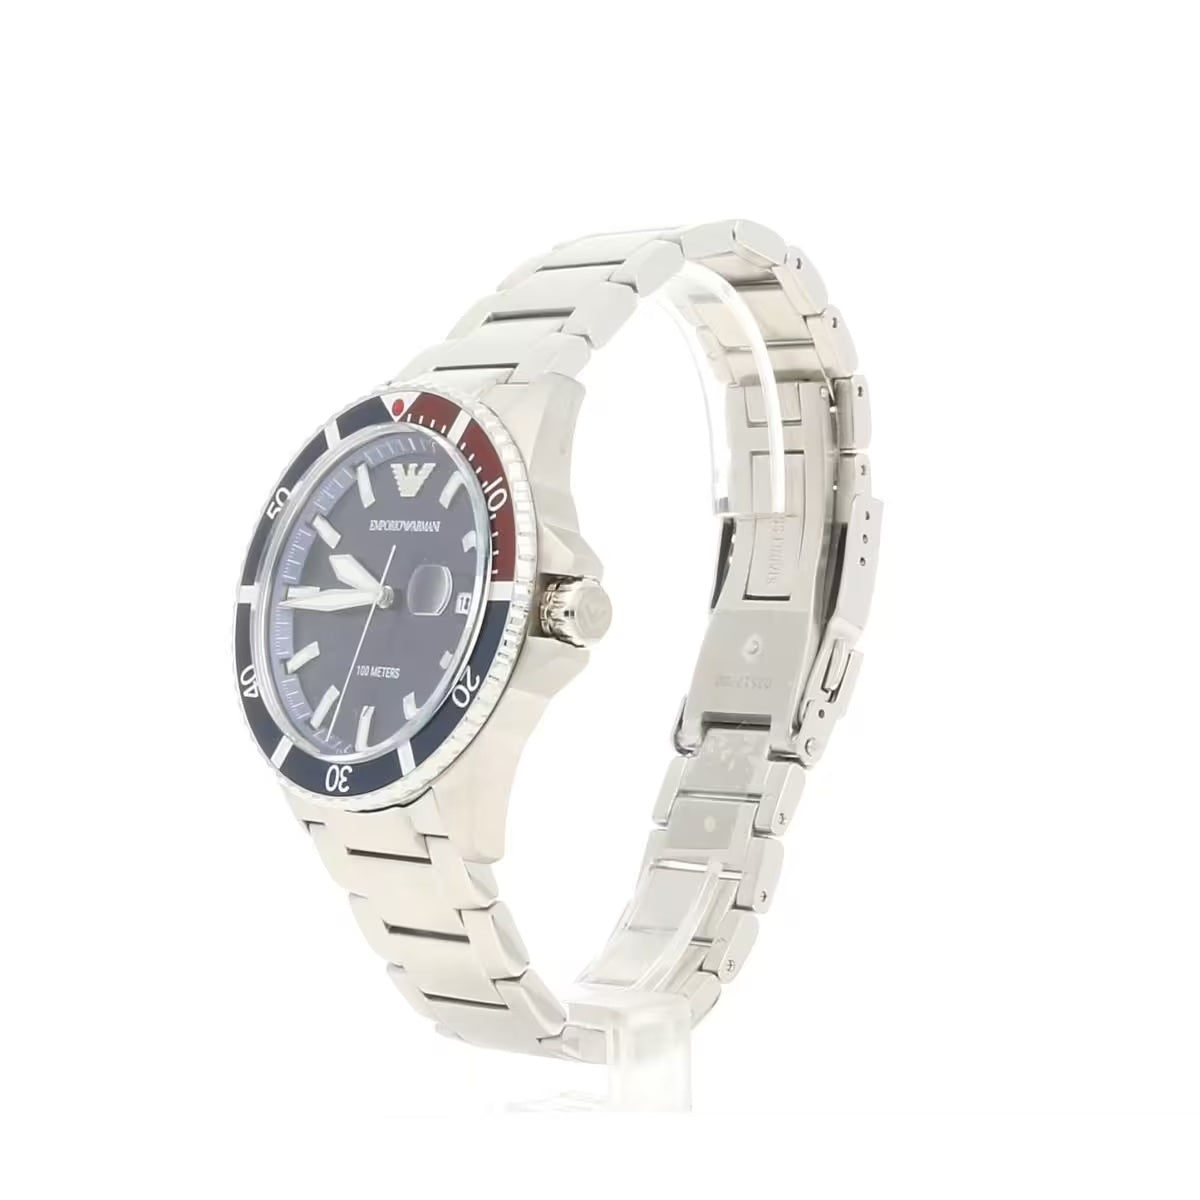 Emporio Armani Elegant Steel Quartz Men's Watch – Ocean Blue Dial